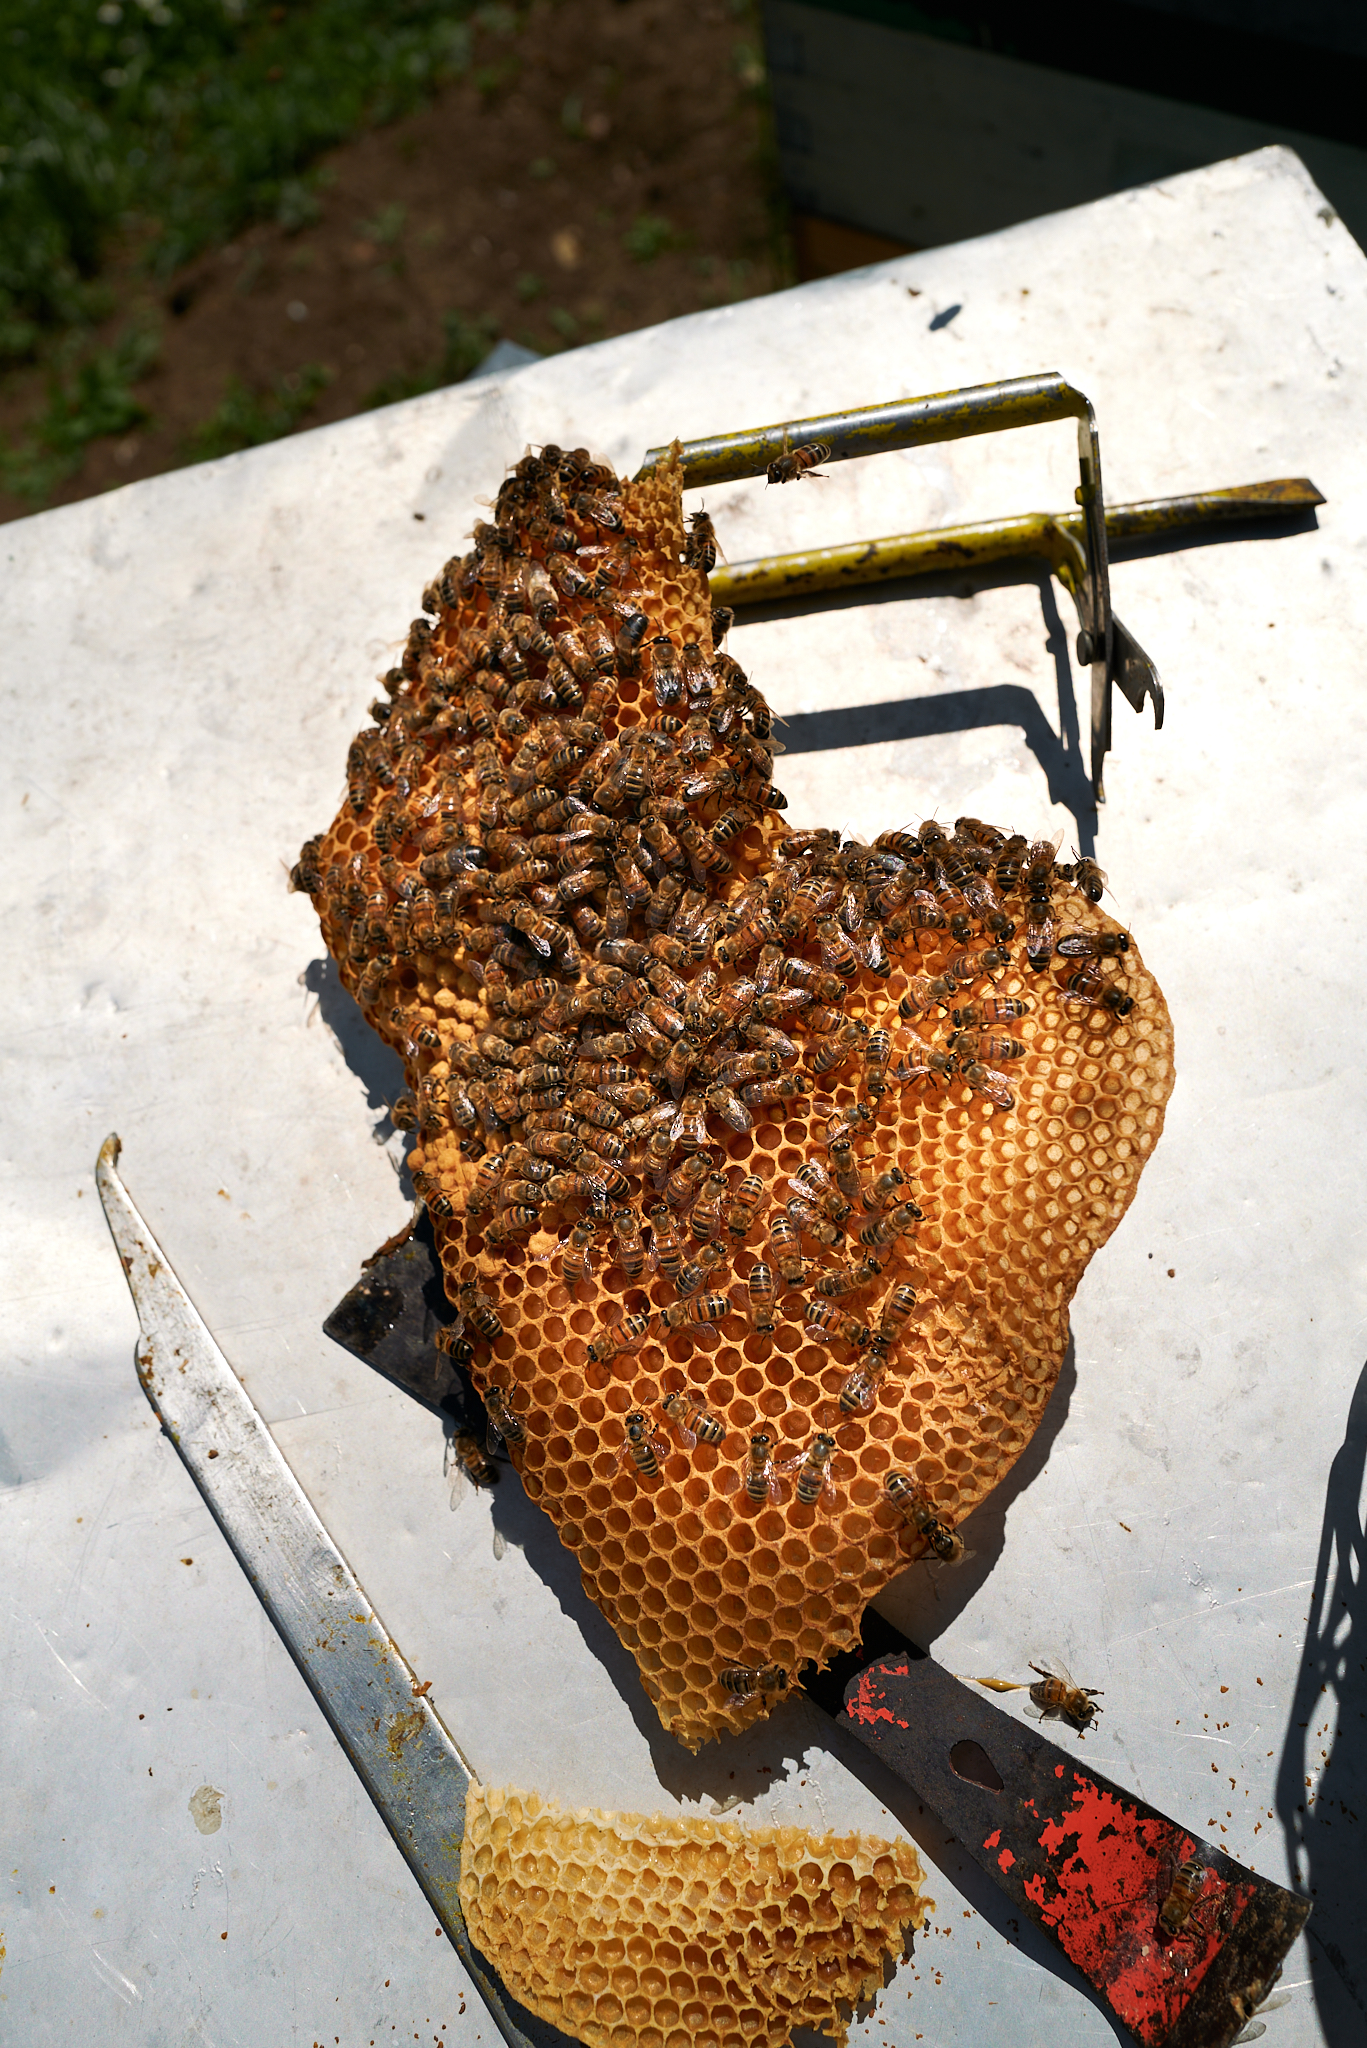 La photographie montre un rayon de miel avec une multitude d'abeilles posées sur une surface en métal. Les abeilles sont disposées de manière uniforme et organisée sur le rayon, tandis que les outils d'apiculteur à côté du rayon suggèrent un travail actif de l'apiculteur dans la ruche. La texture cireuse et hexagonale du rayon est nettement visible, tout comme les pattes velues des abeilles qui s'y agrippent fermement.